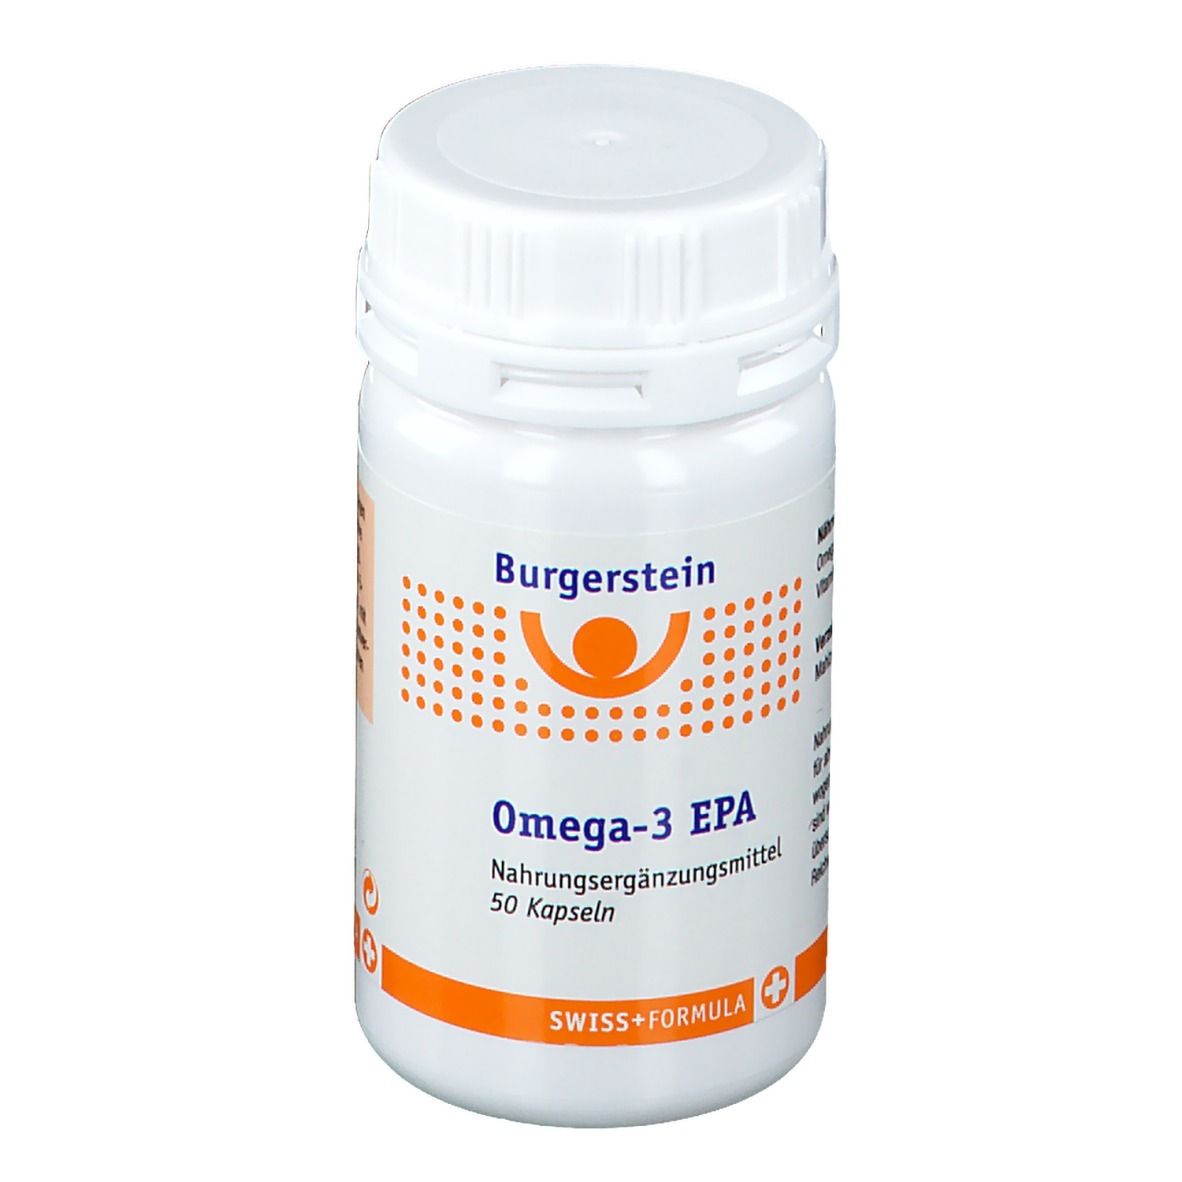 Burgerstein Omega-3 EPA Kapseln